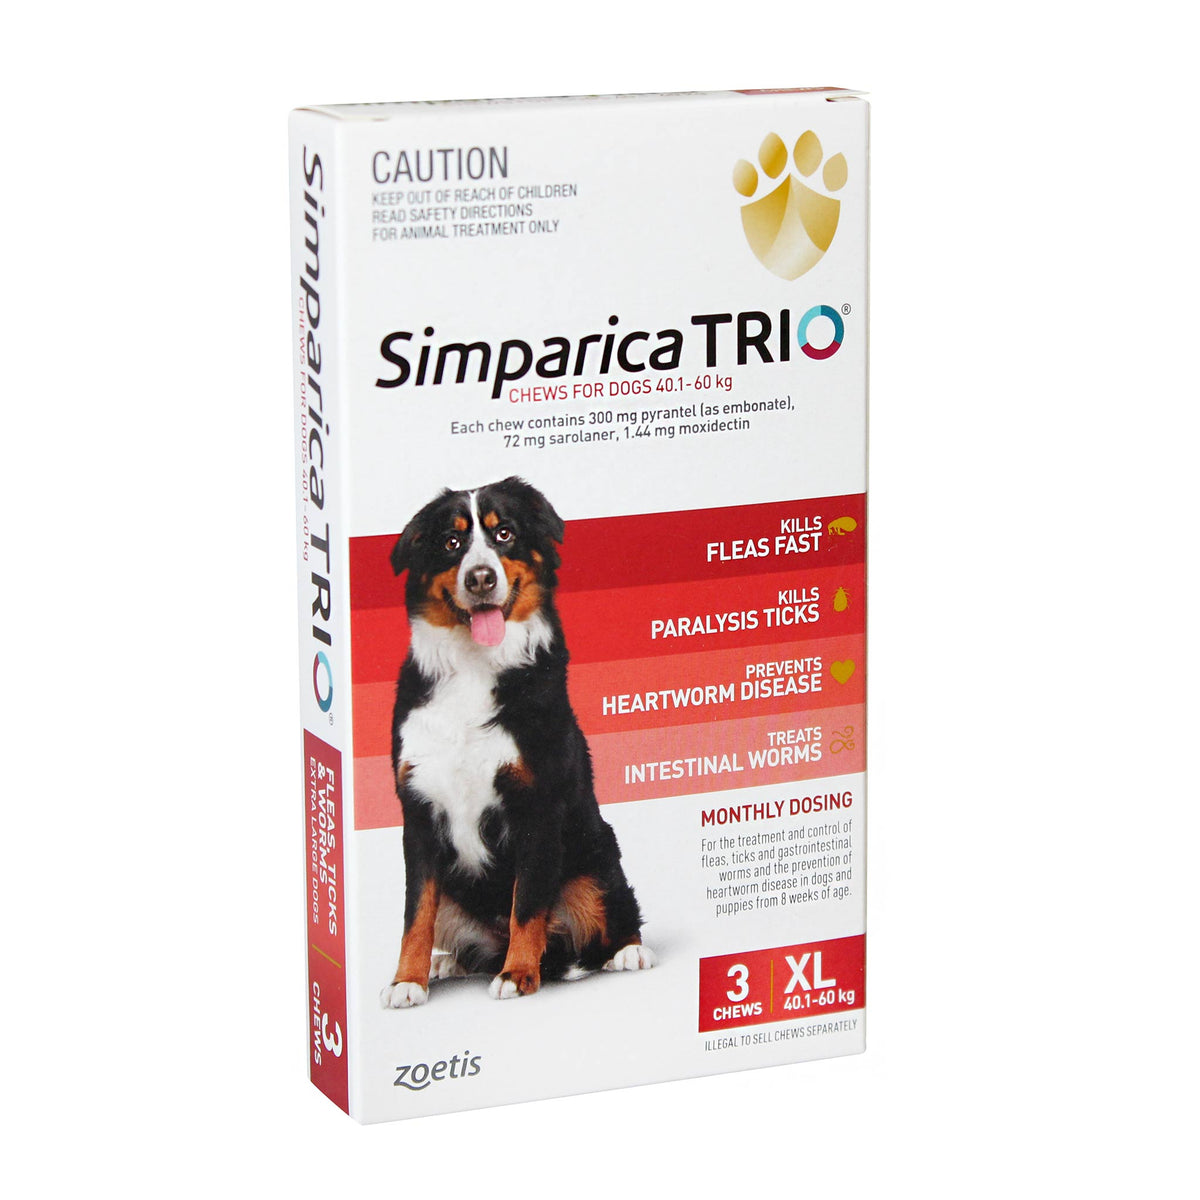 Simparica TRIO for XLarge Dogs 40.1-60kg